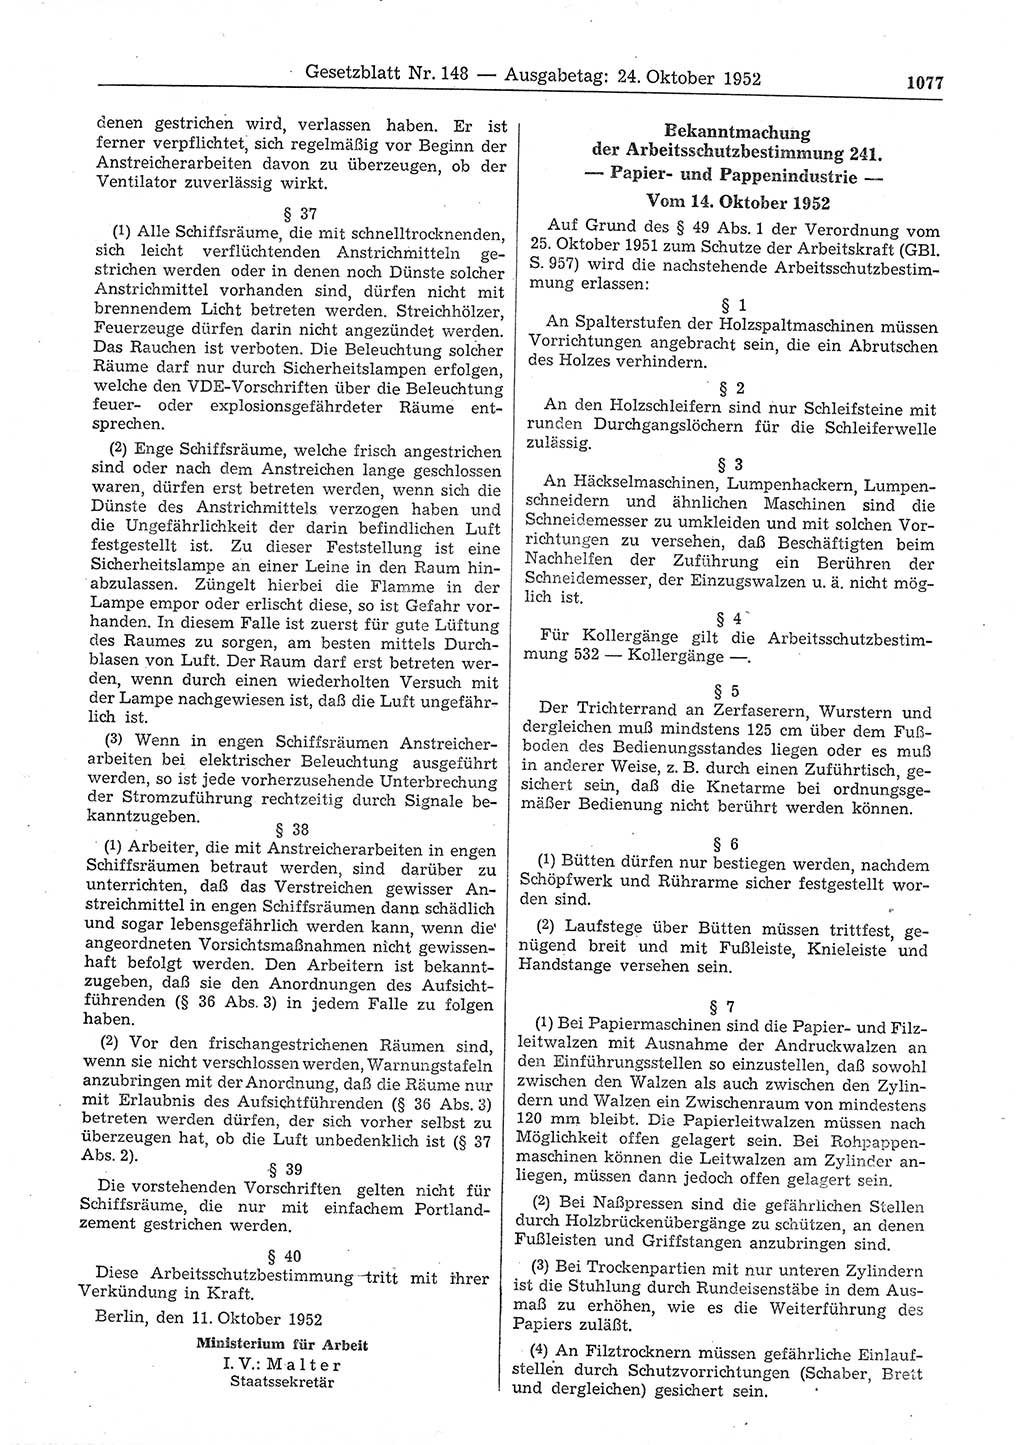 Gesetzblatt (GBl.) der Deutschen Demokratischen Republik (DDR) 1952, Seite 1077 (GBl. DDR 1952, S. 1077)